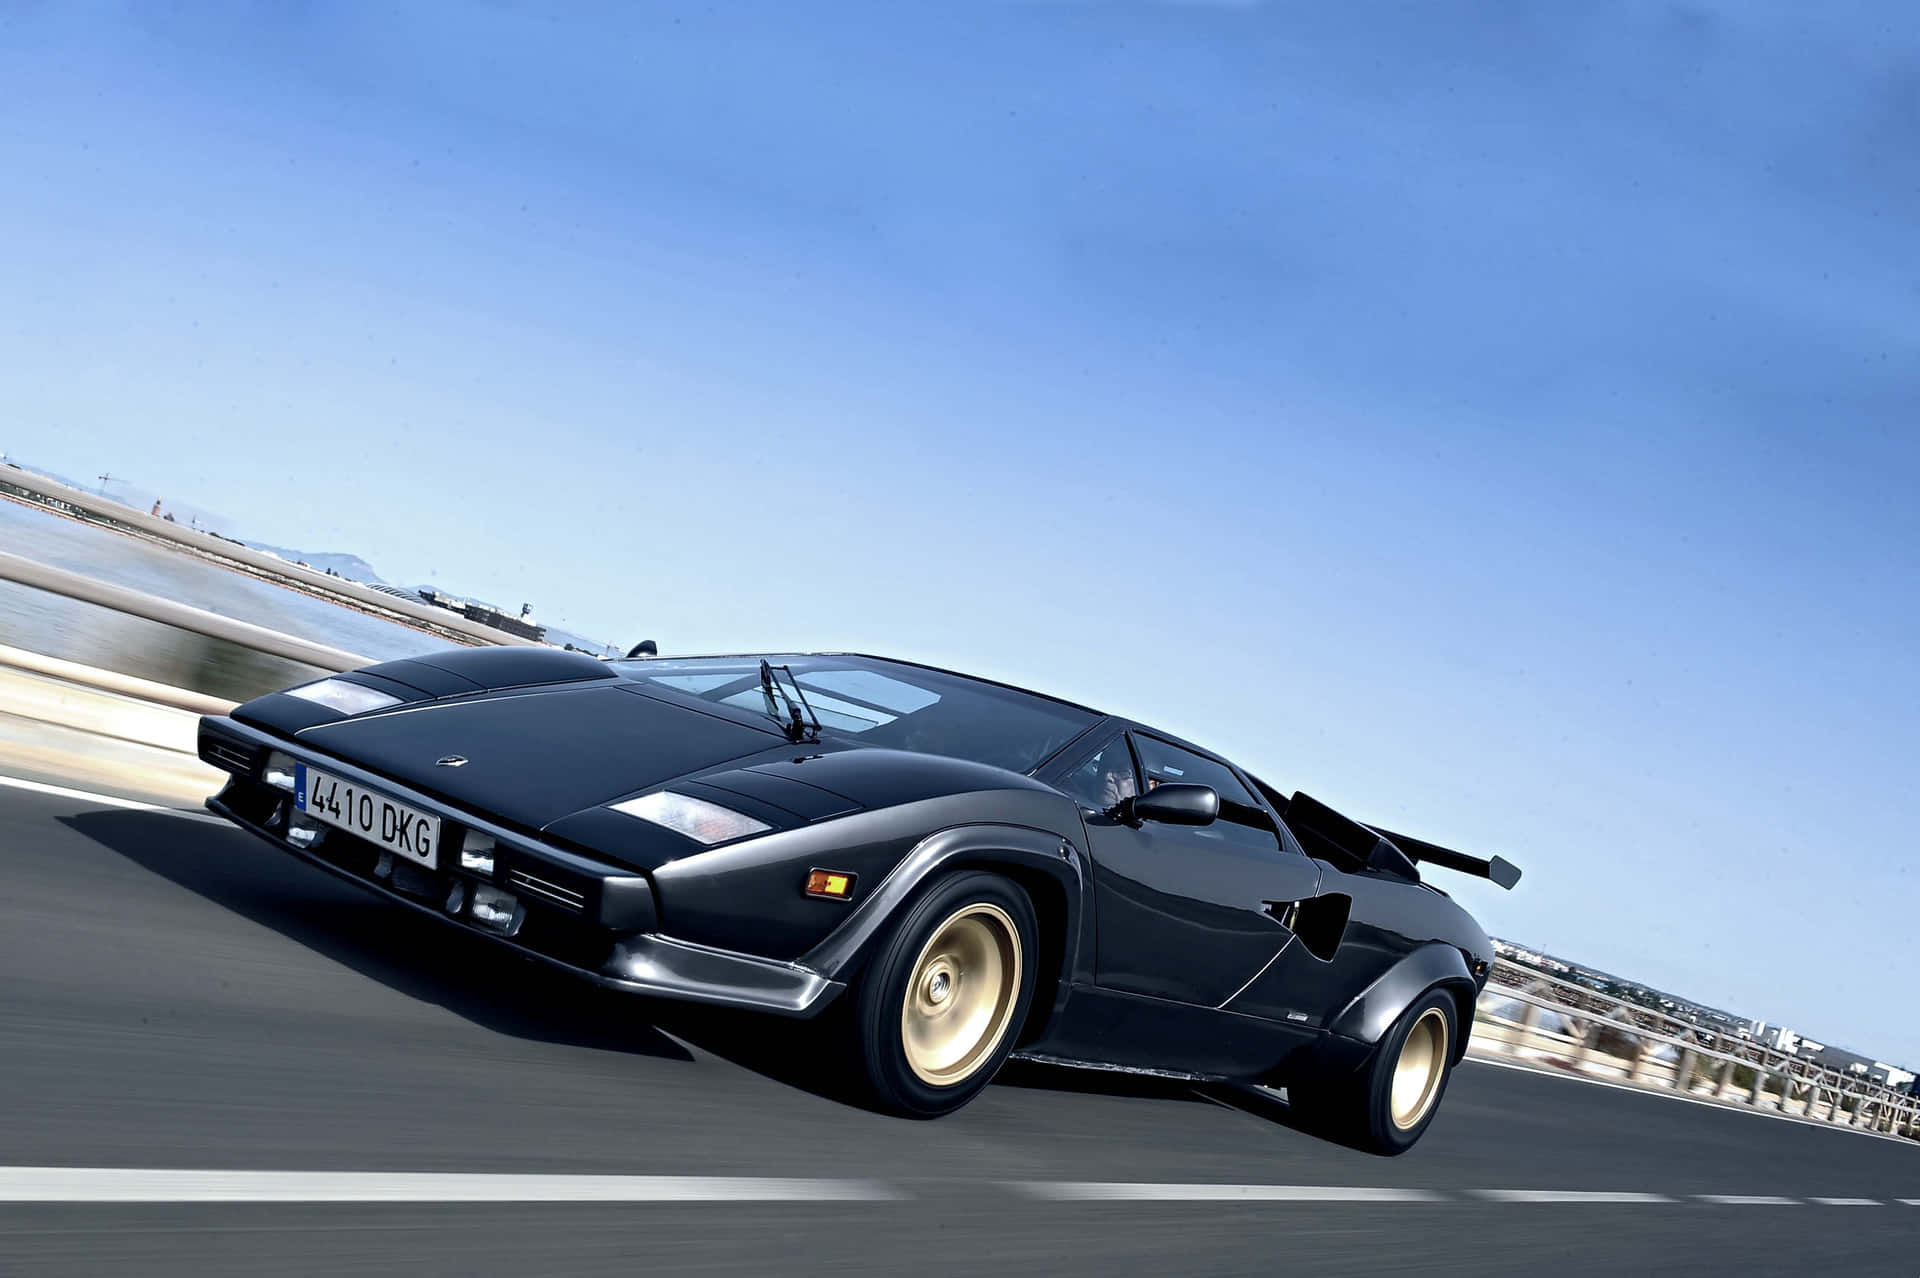 Lamborghini Countach - The Iconic Supercar Wallpaper